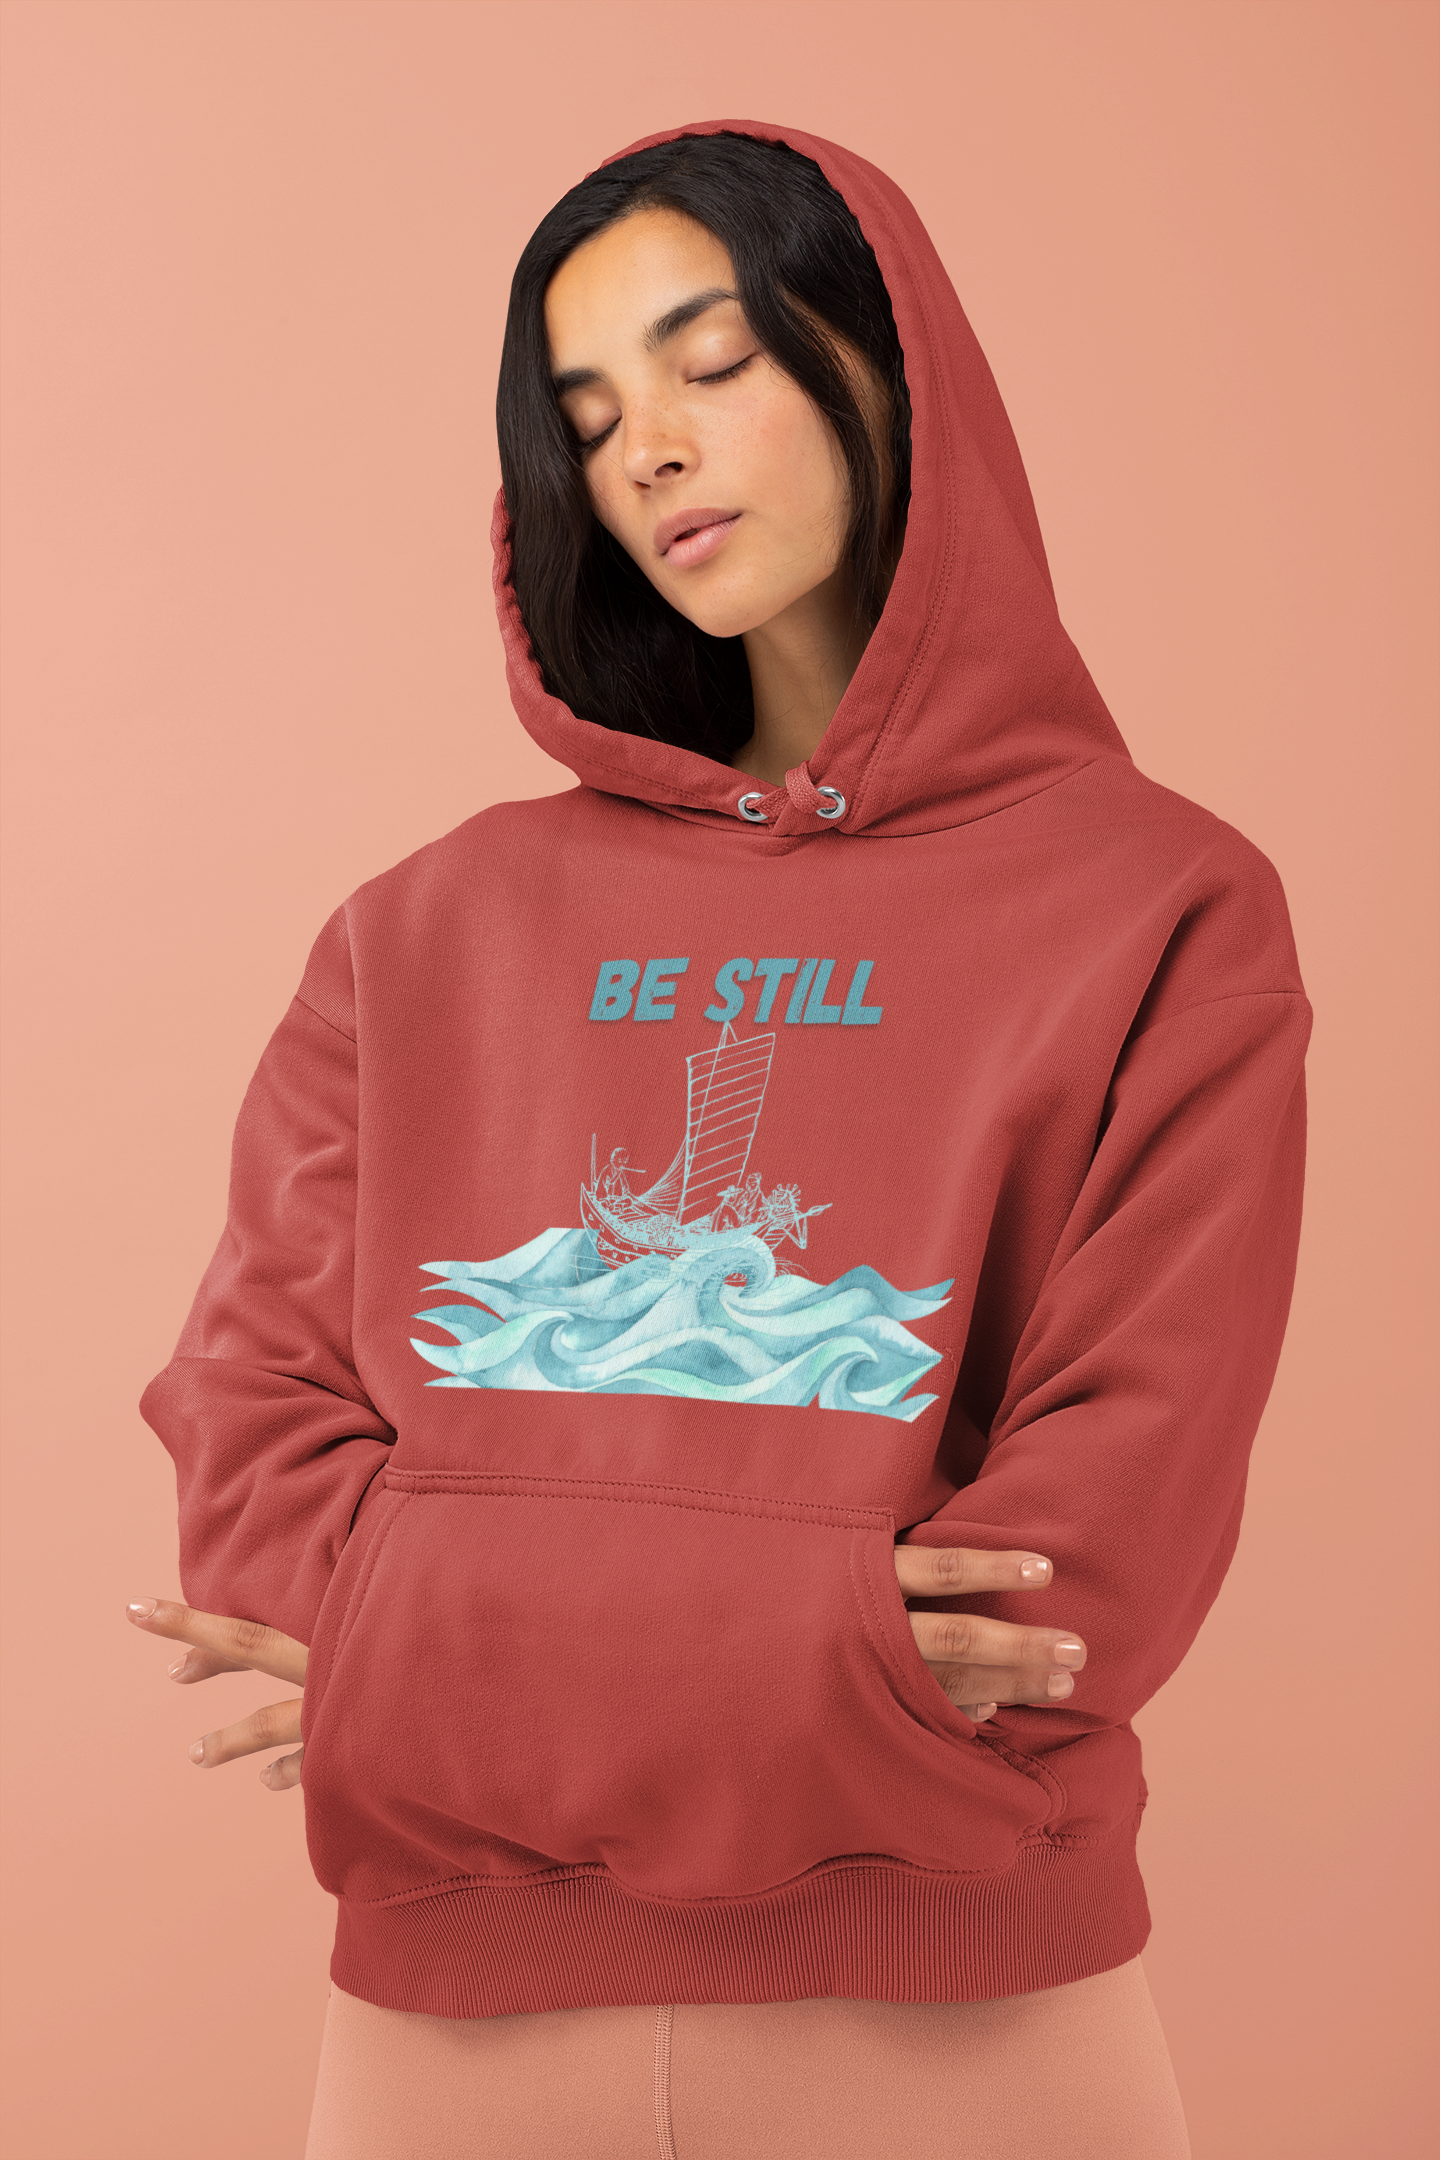 Be Still - Women's Christian Hooded Sweatshirt